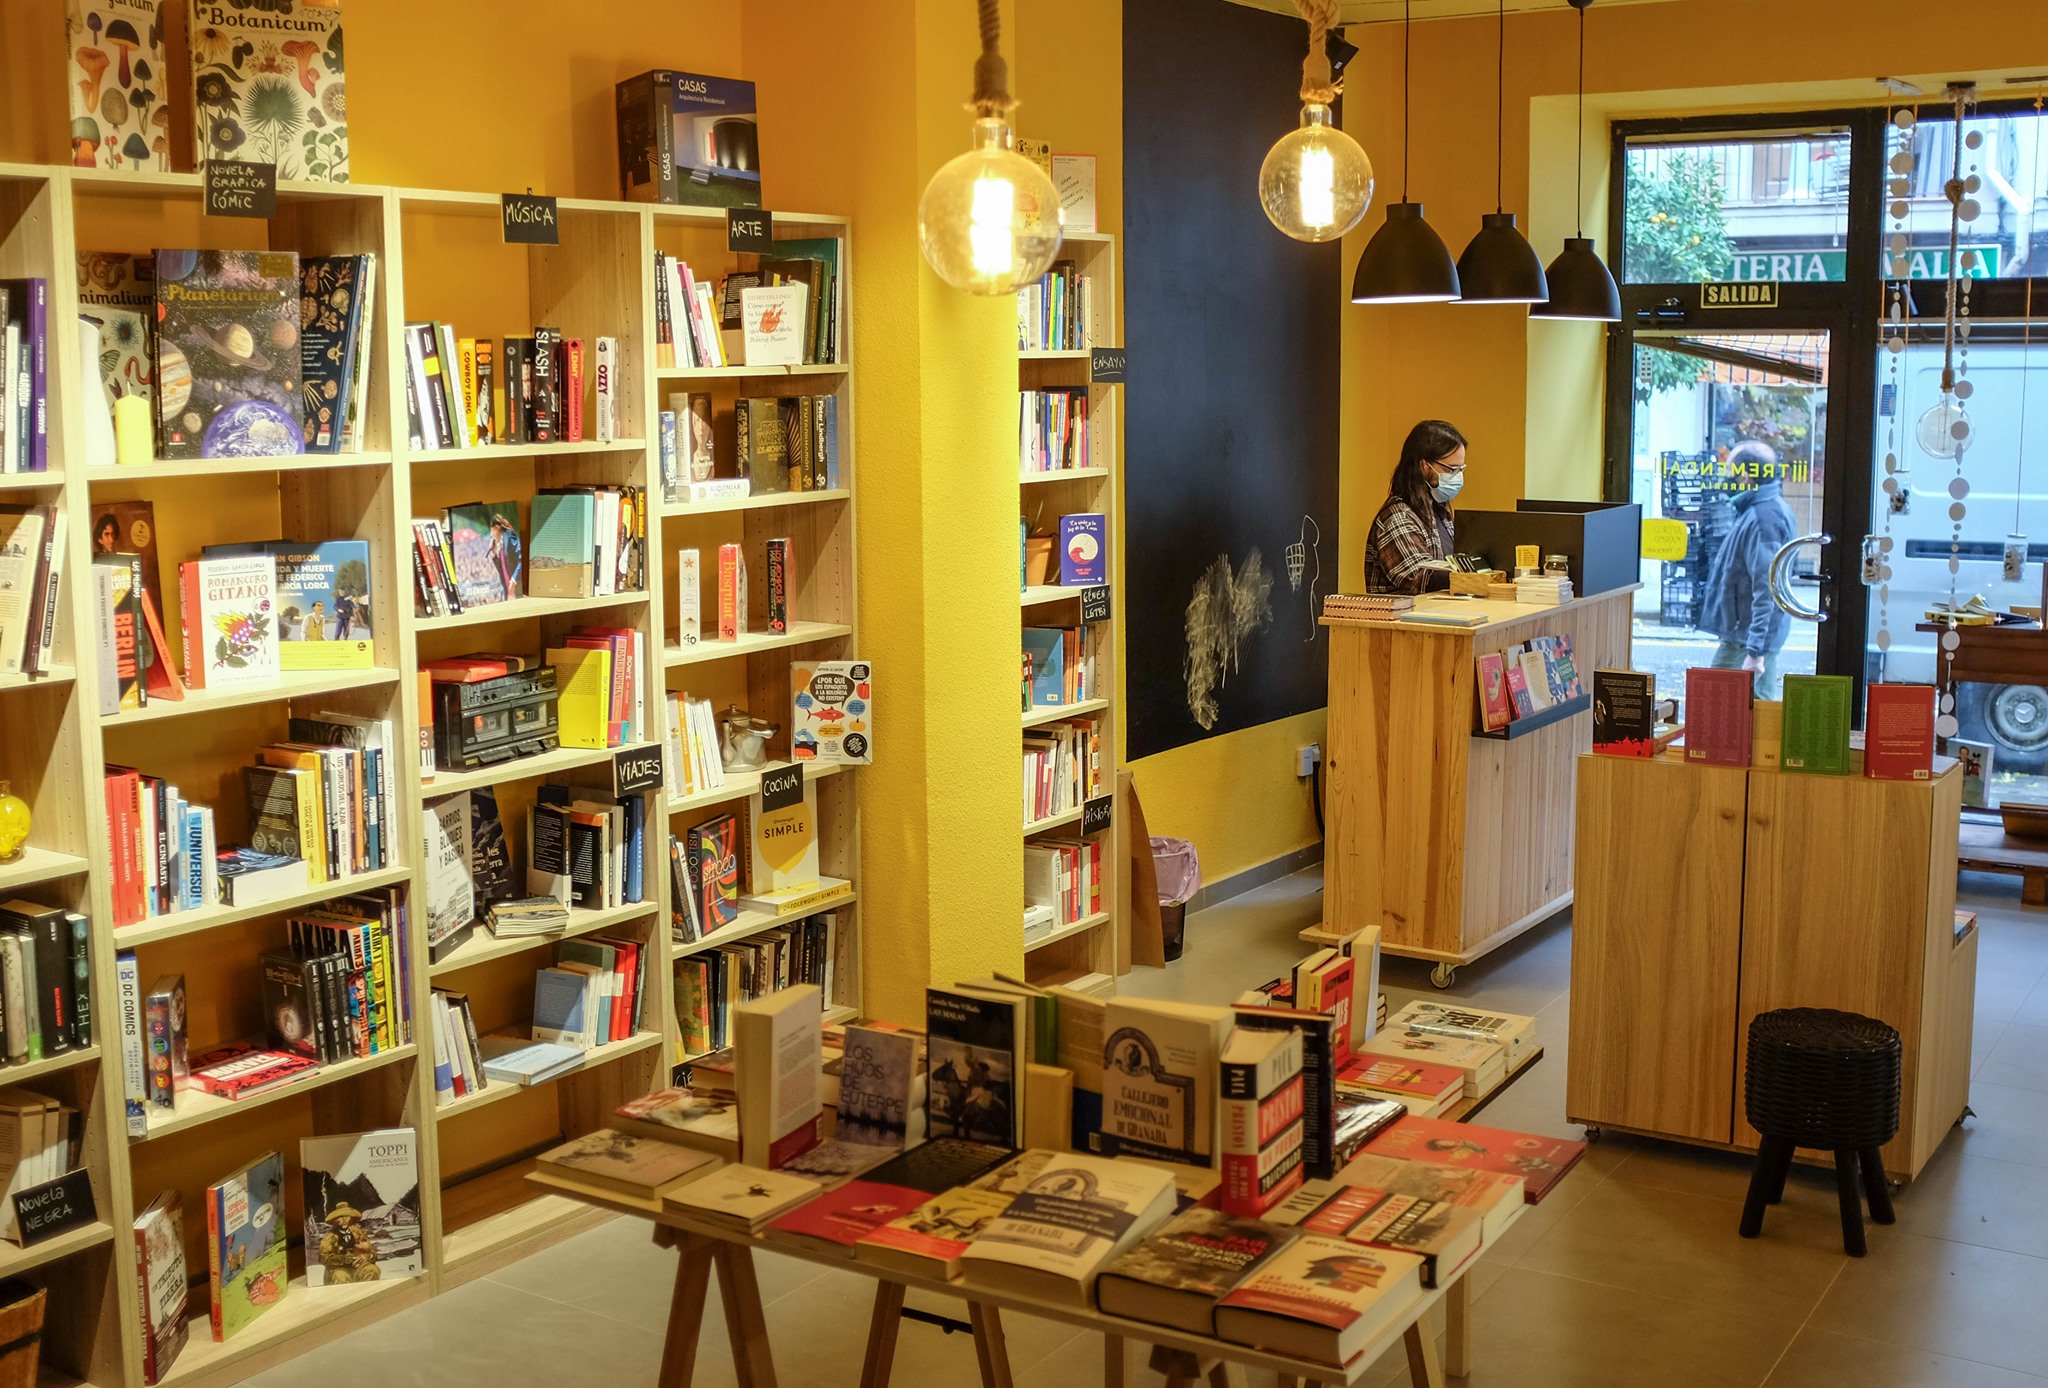 Tremenda Librería, una de las nuevas librerías que ya está empleando Geslib